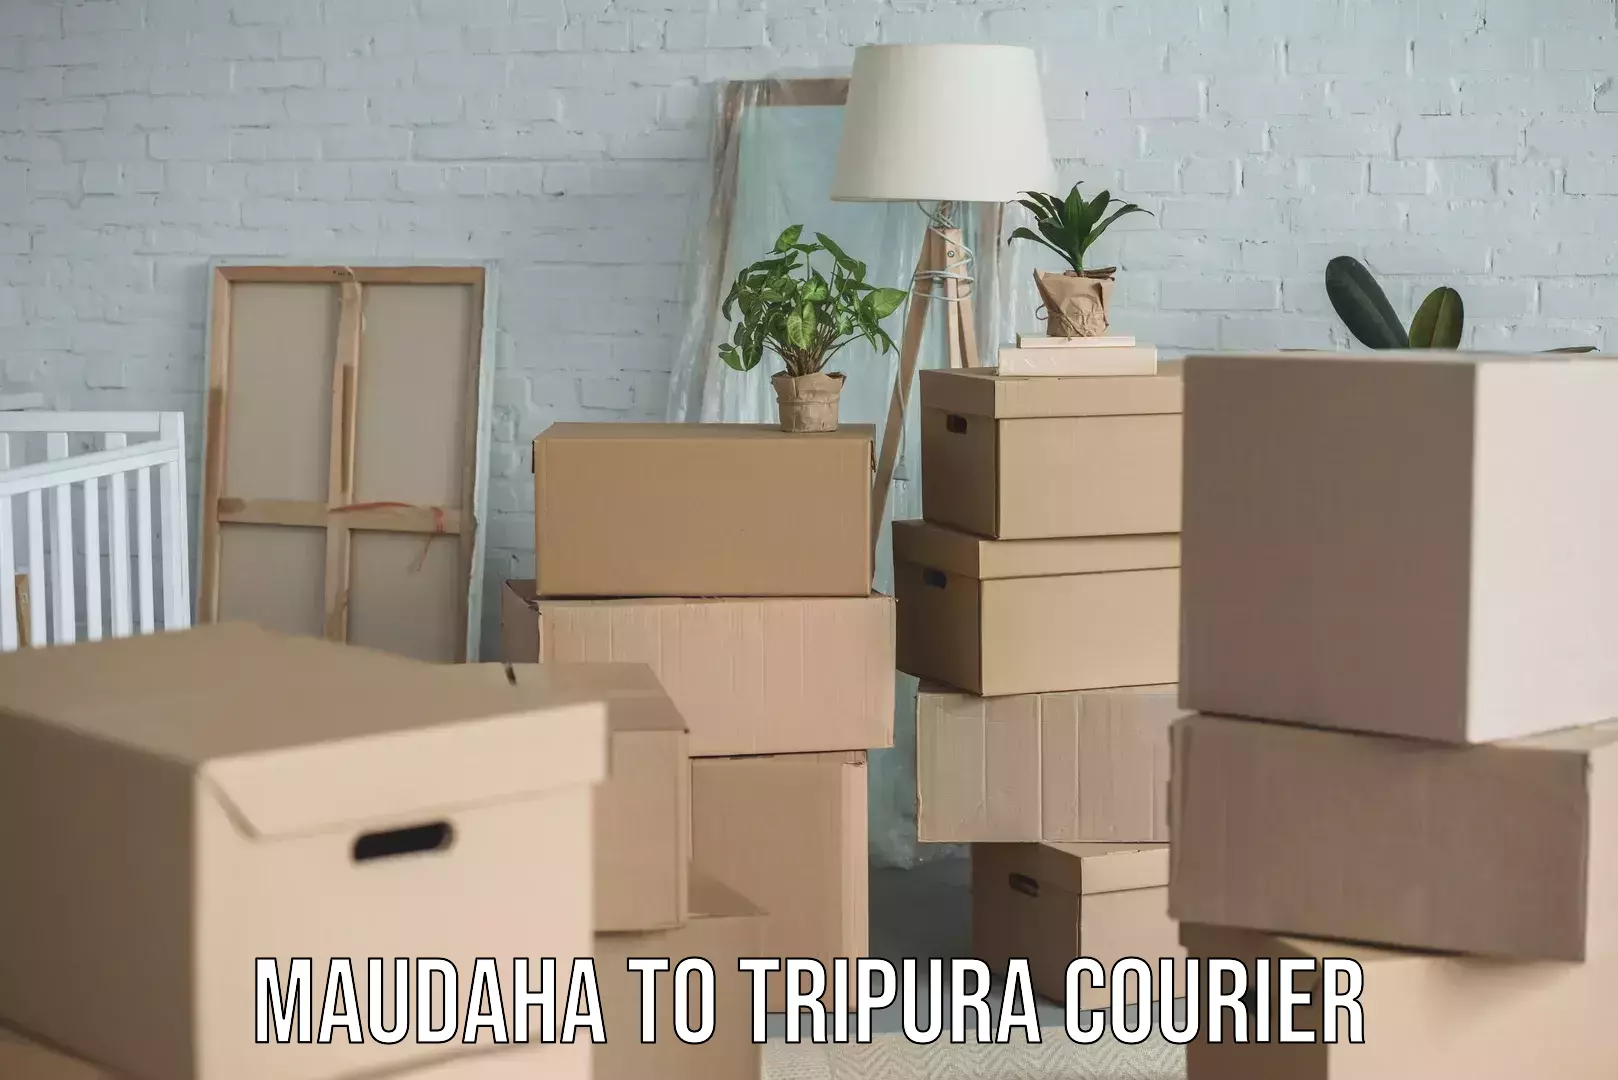 Furniture moving experts Maudaha to Tripura